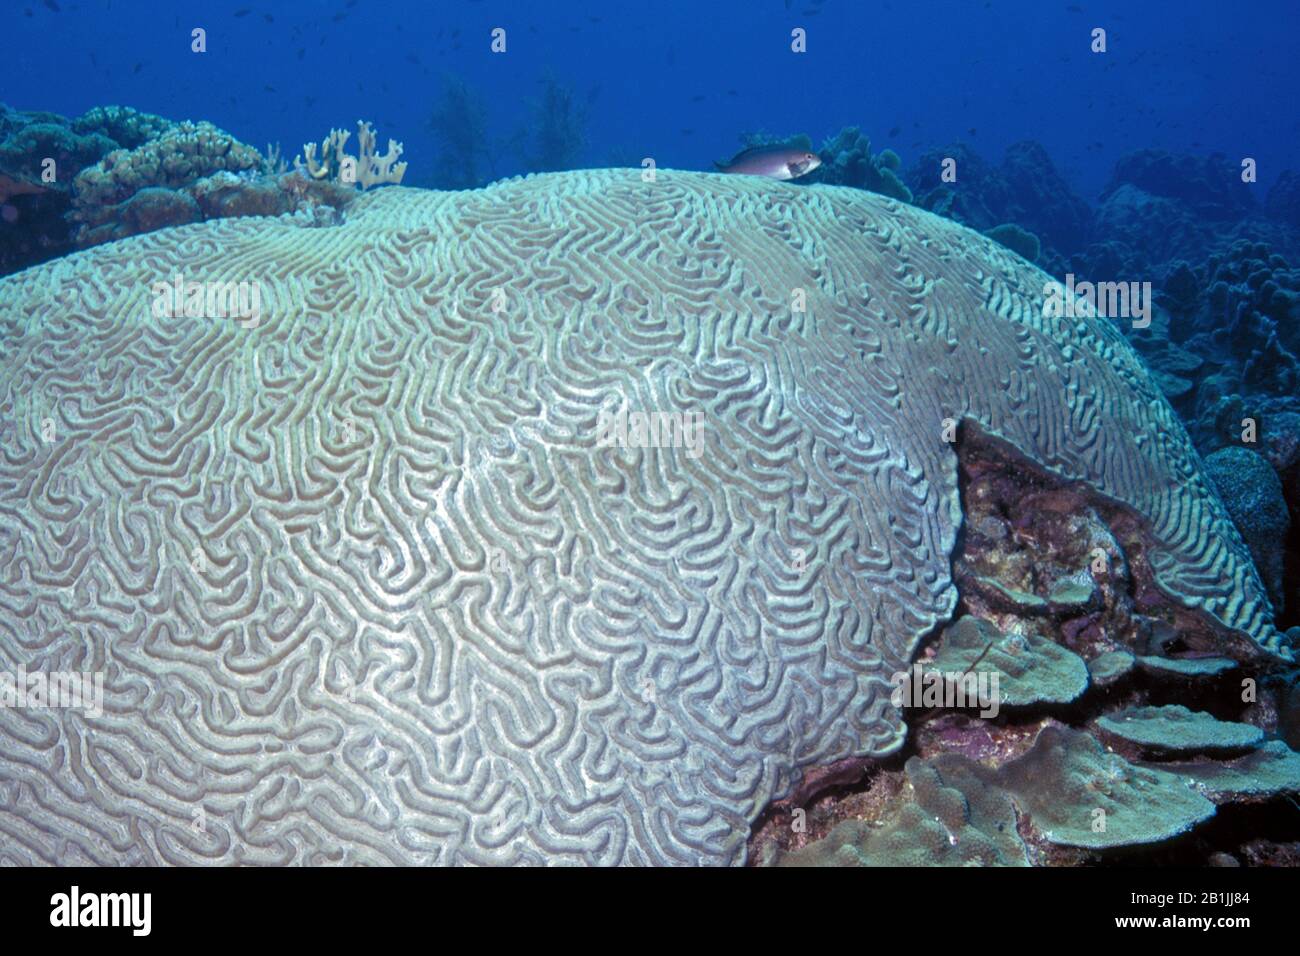 symmetrical brain coral (Diploria strigosa), Netherlands Antilles, Curacao Stock Photo